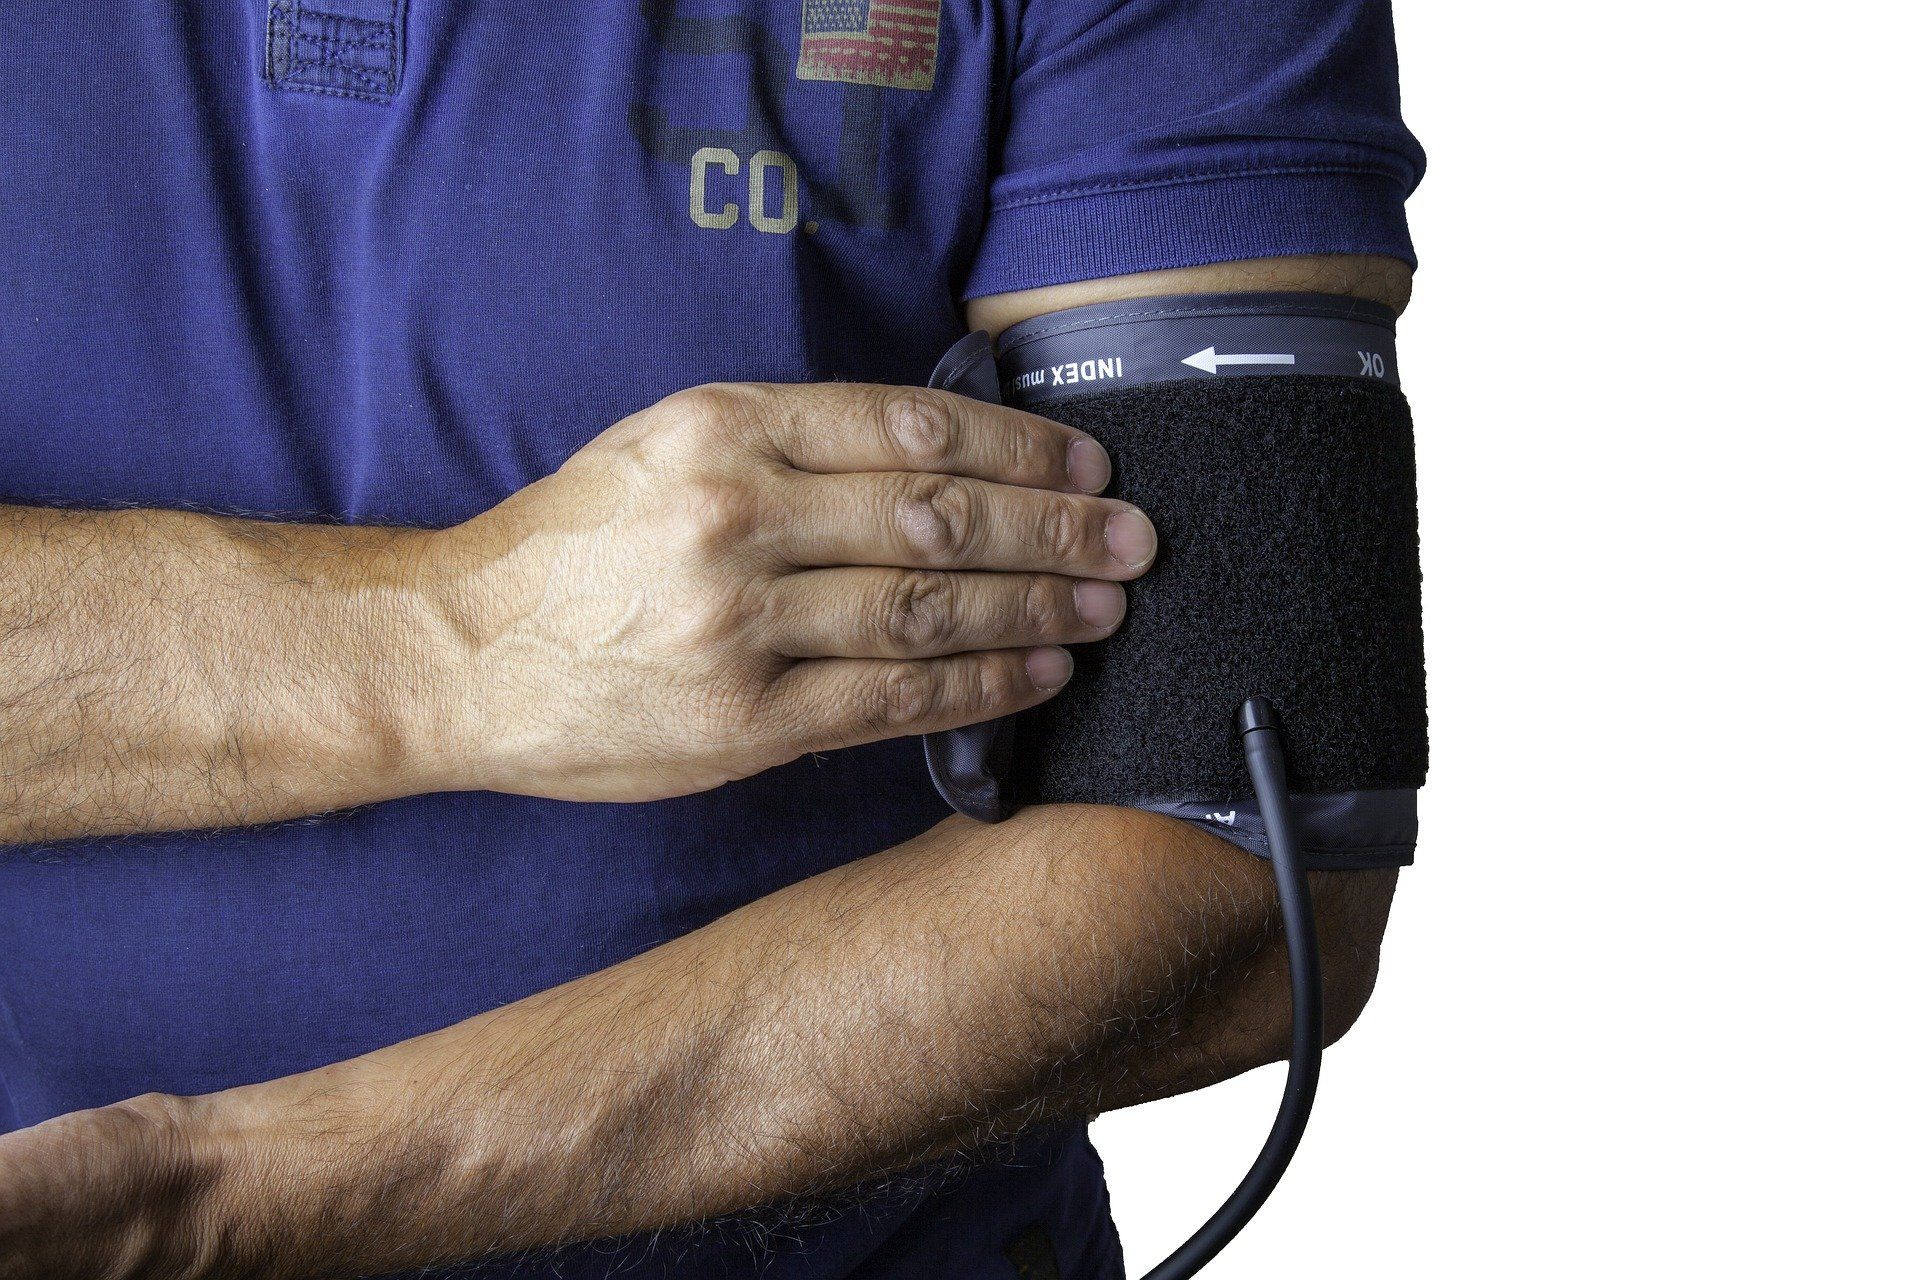 Nadciśnienie tętnicze pierwotne – czym jest? Przyczyny, objawy i leczenie nadciśnienia samoistnego